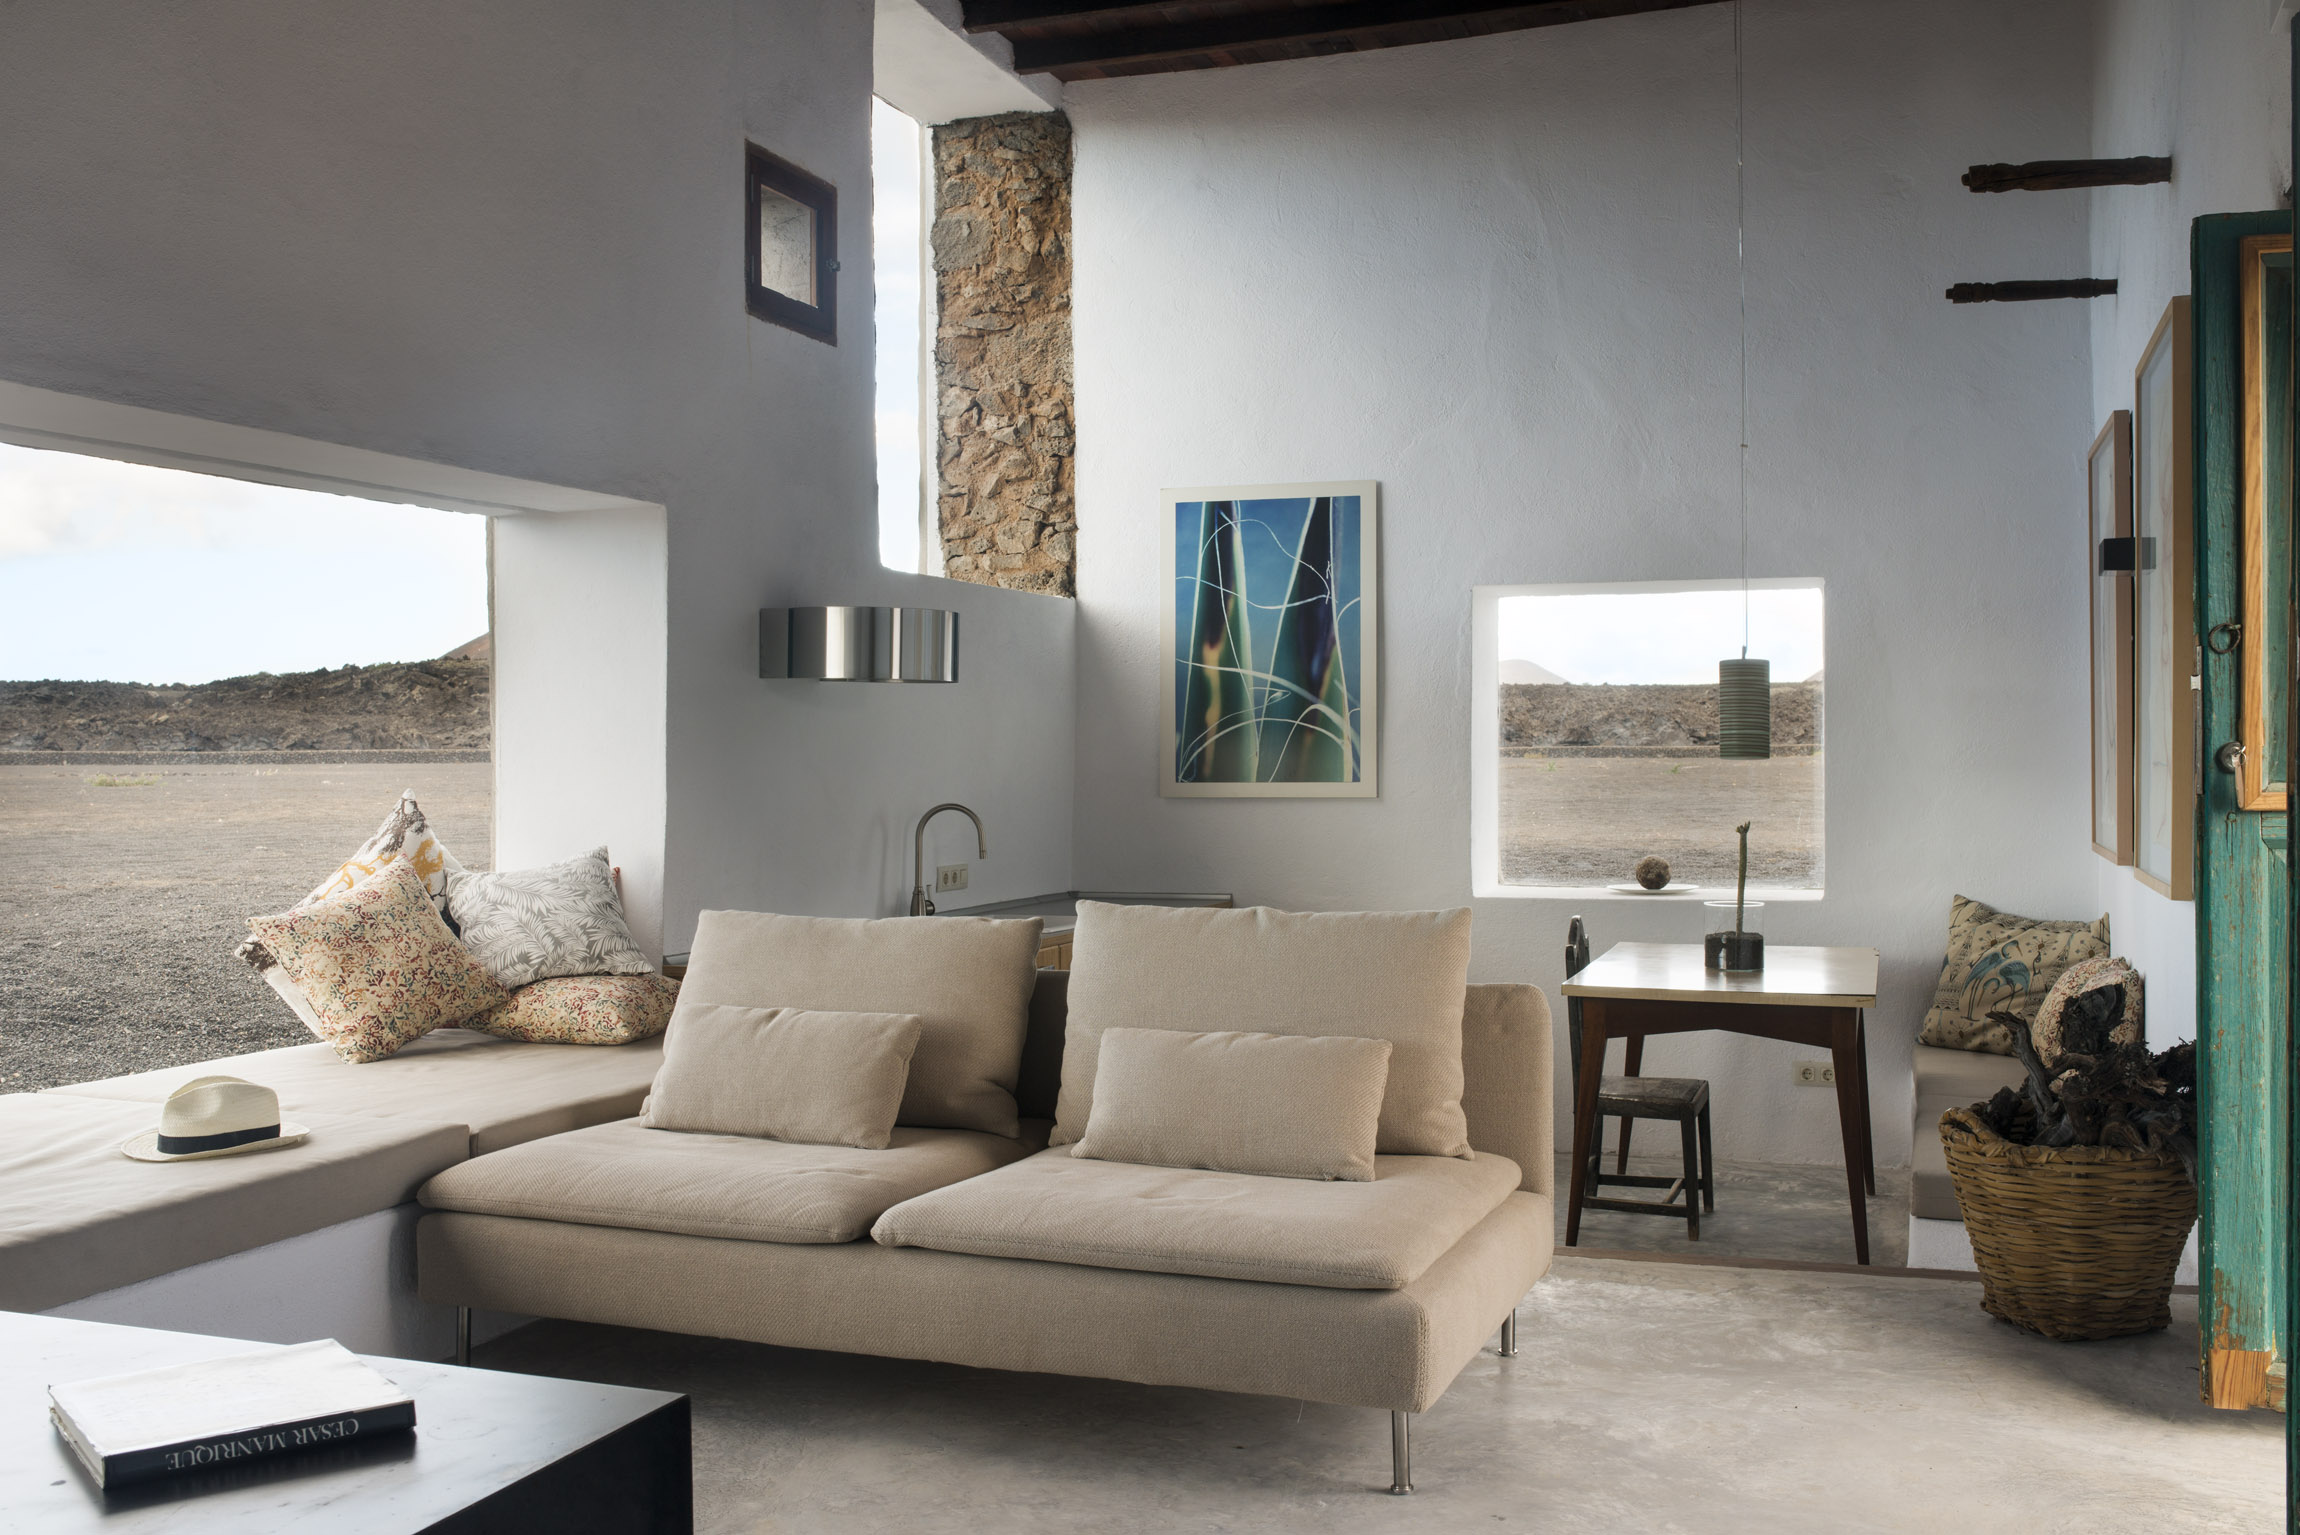 Buenavista Lanzarote Country Suites Casa Este livingroom